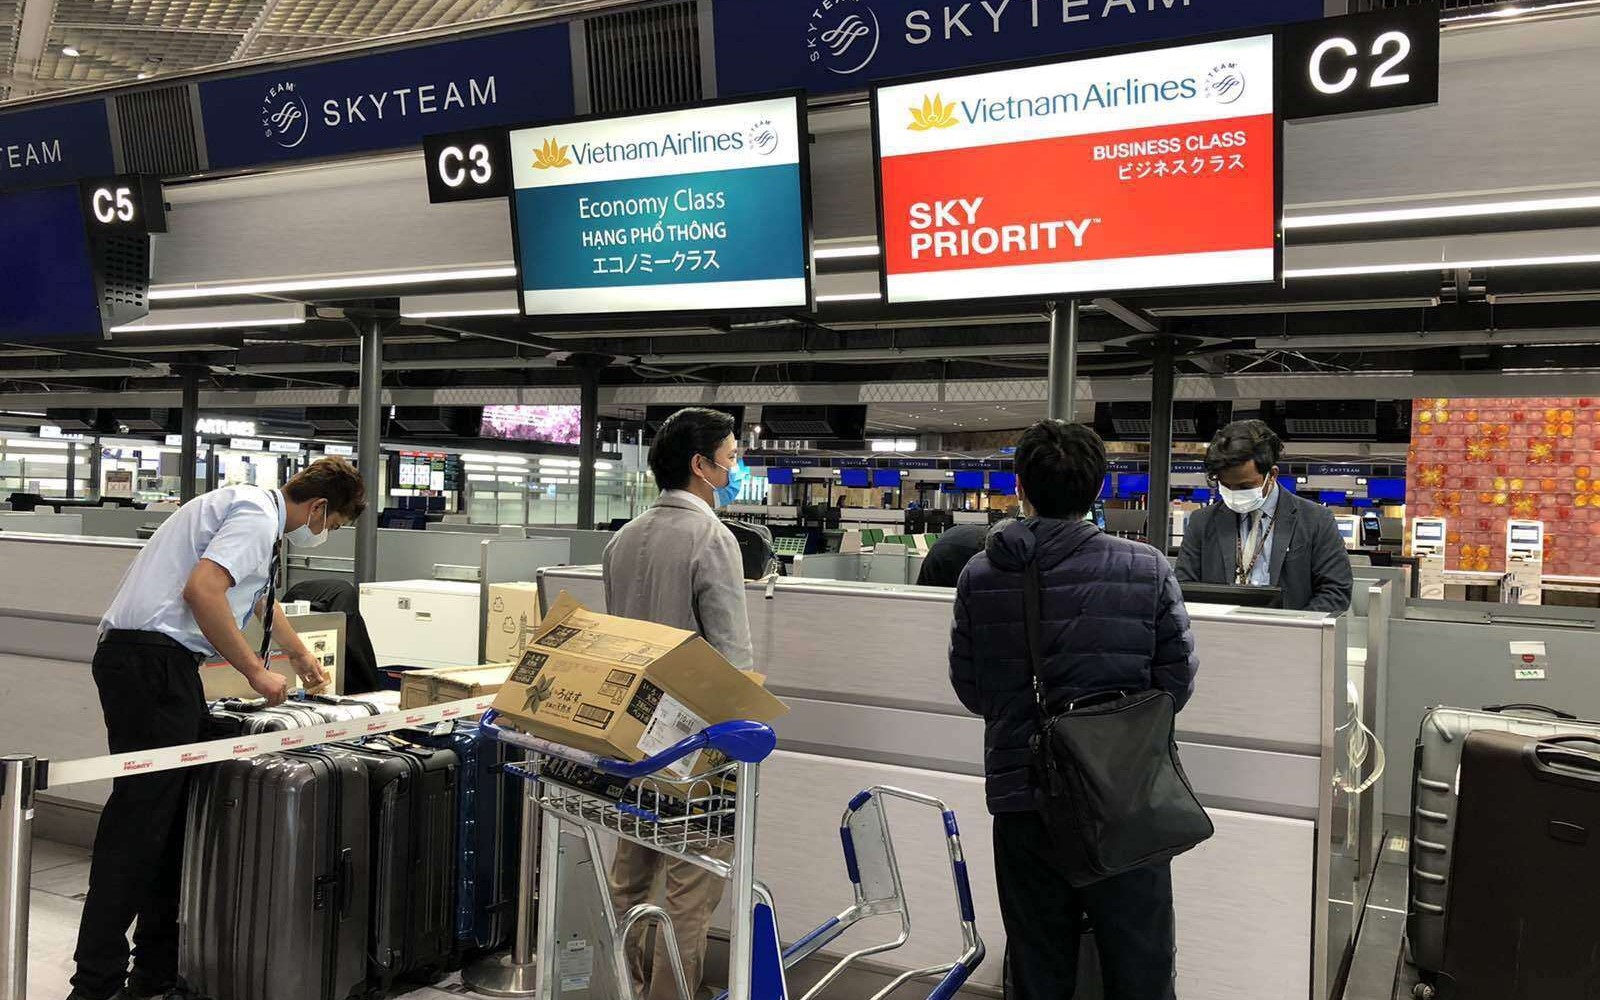 Hành khách làm thủ tục tại sân bay Narita, Tokyo, Nhật Bản (Ảnh: VietnamAirlines)